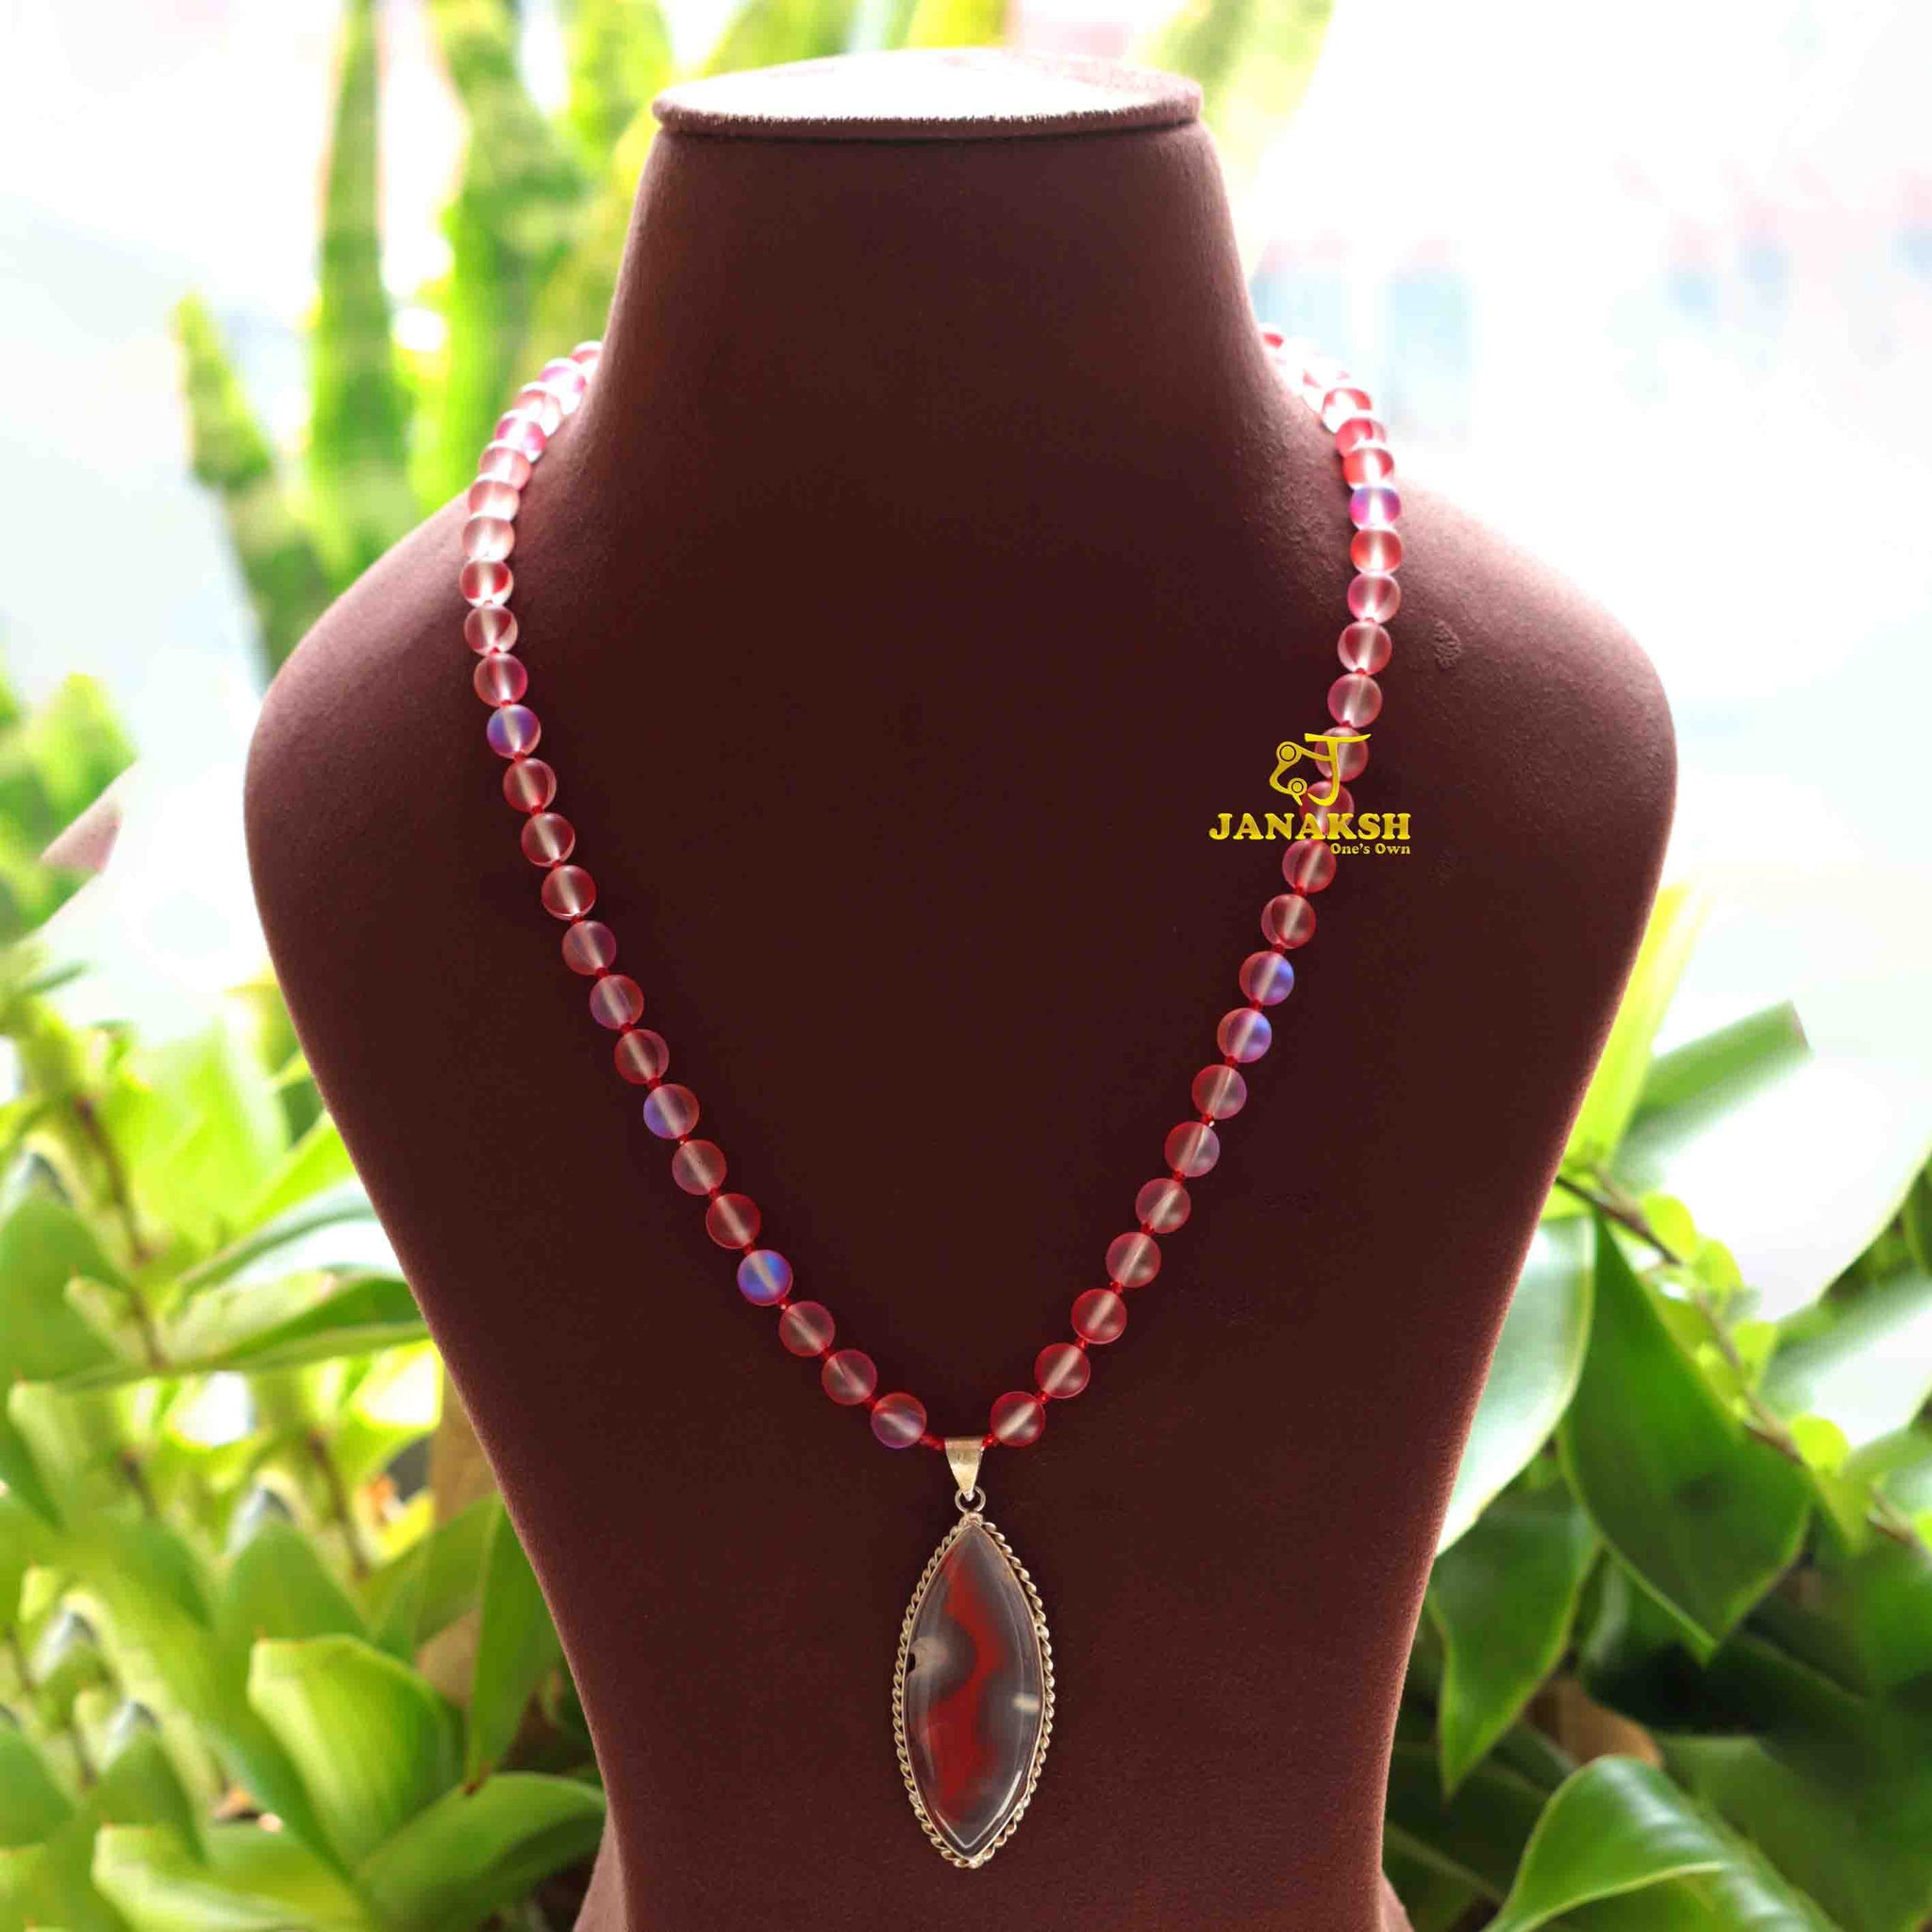 Janaksh semiprecious aura quartz statement necklace with gemstone pendent